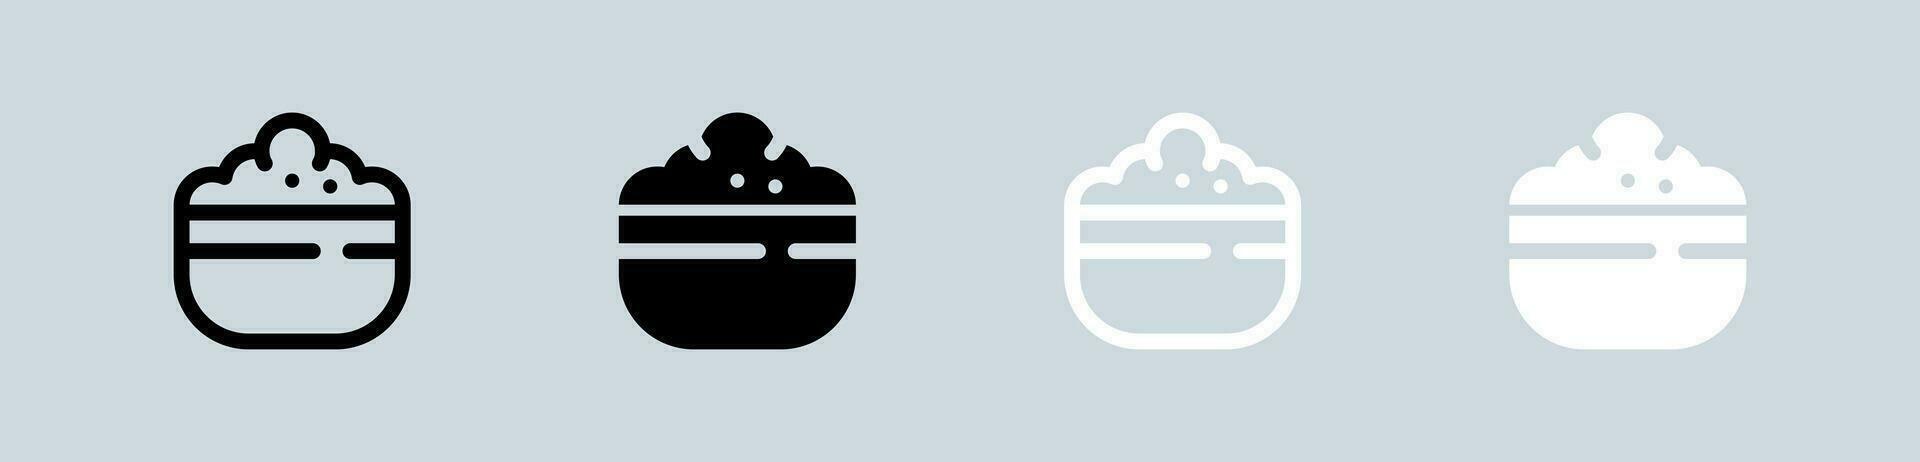 ris skål ikon uppsättning i svart och vit. mat tecken vektor illustration.